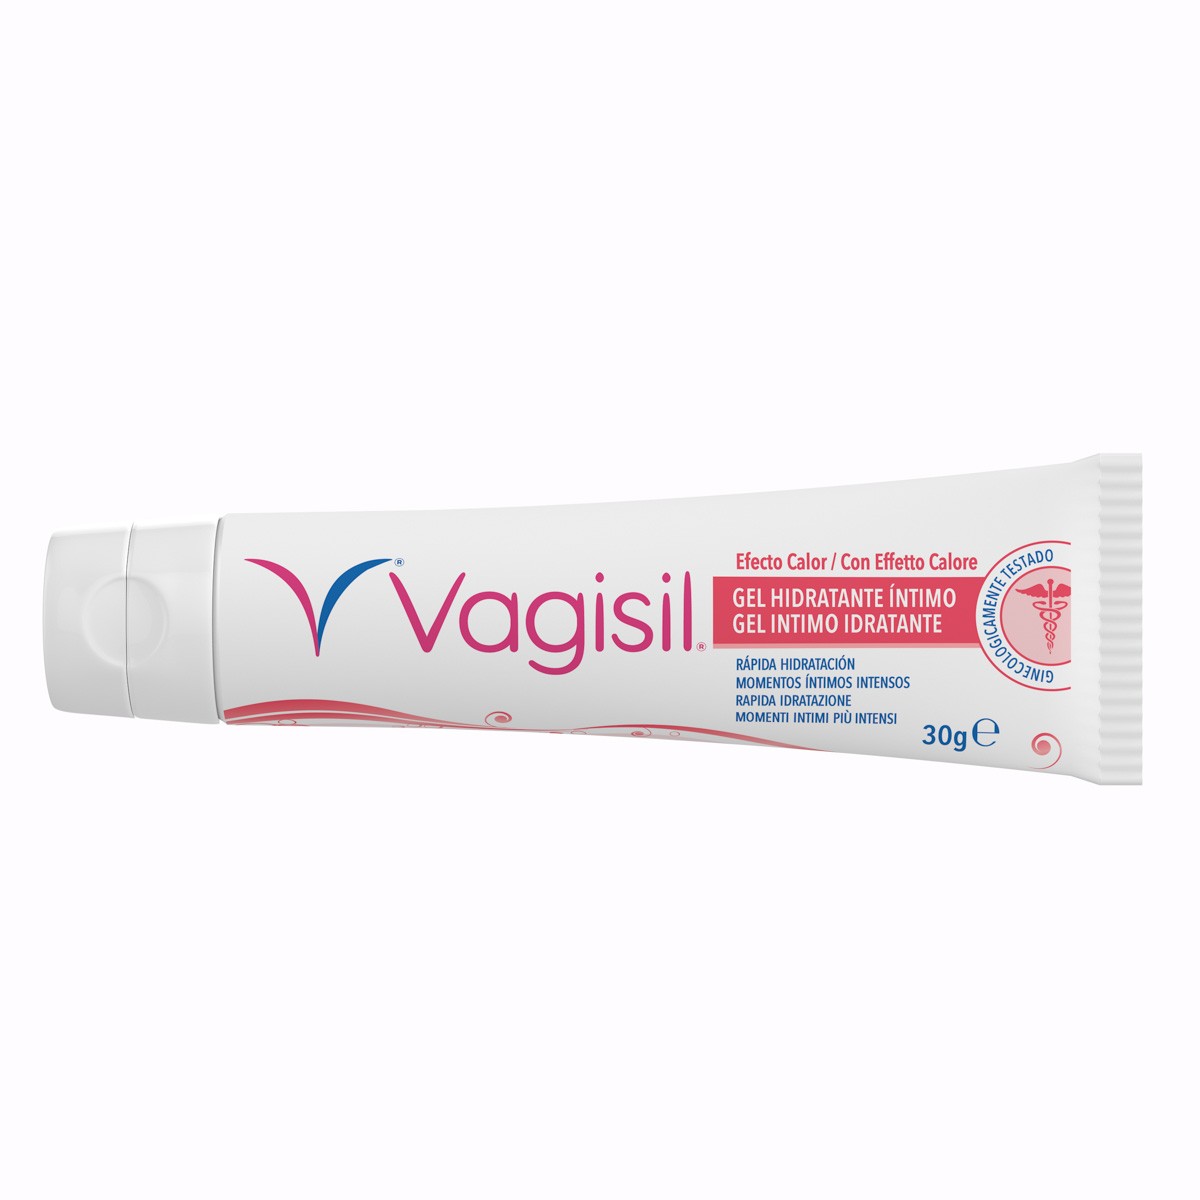 Vagisil gel lubricante vaginal efecto calor 30g